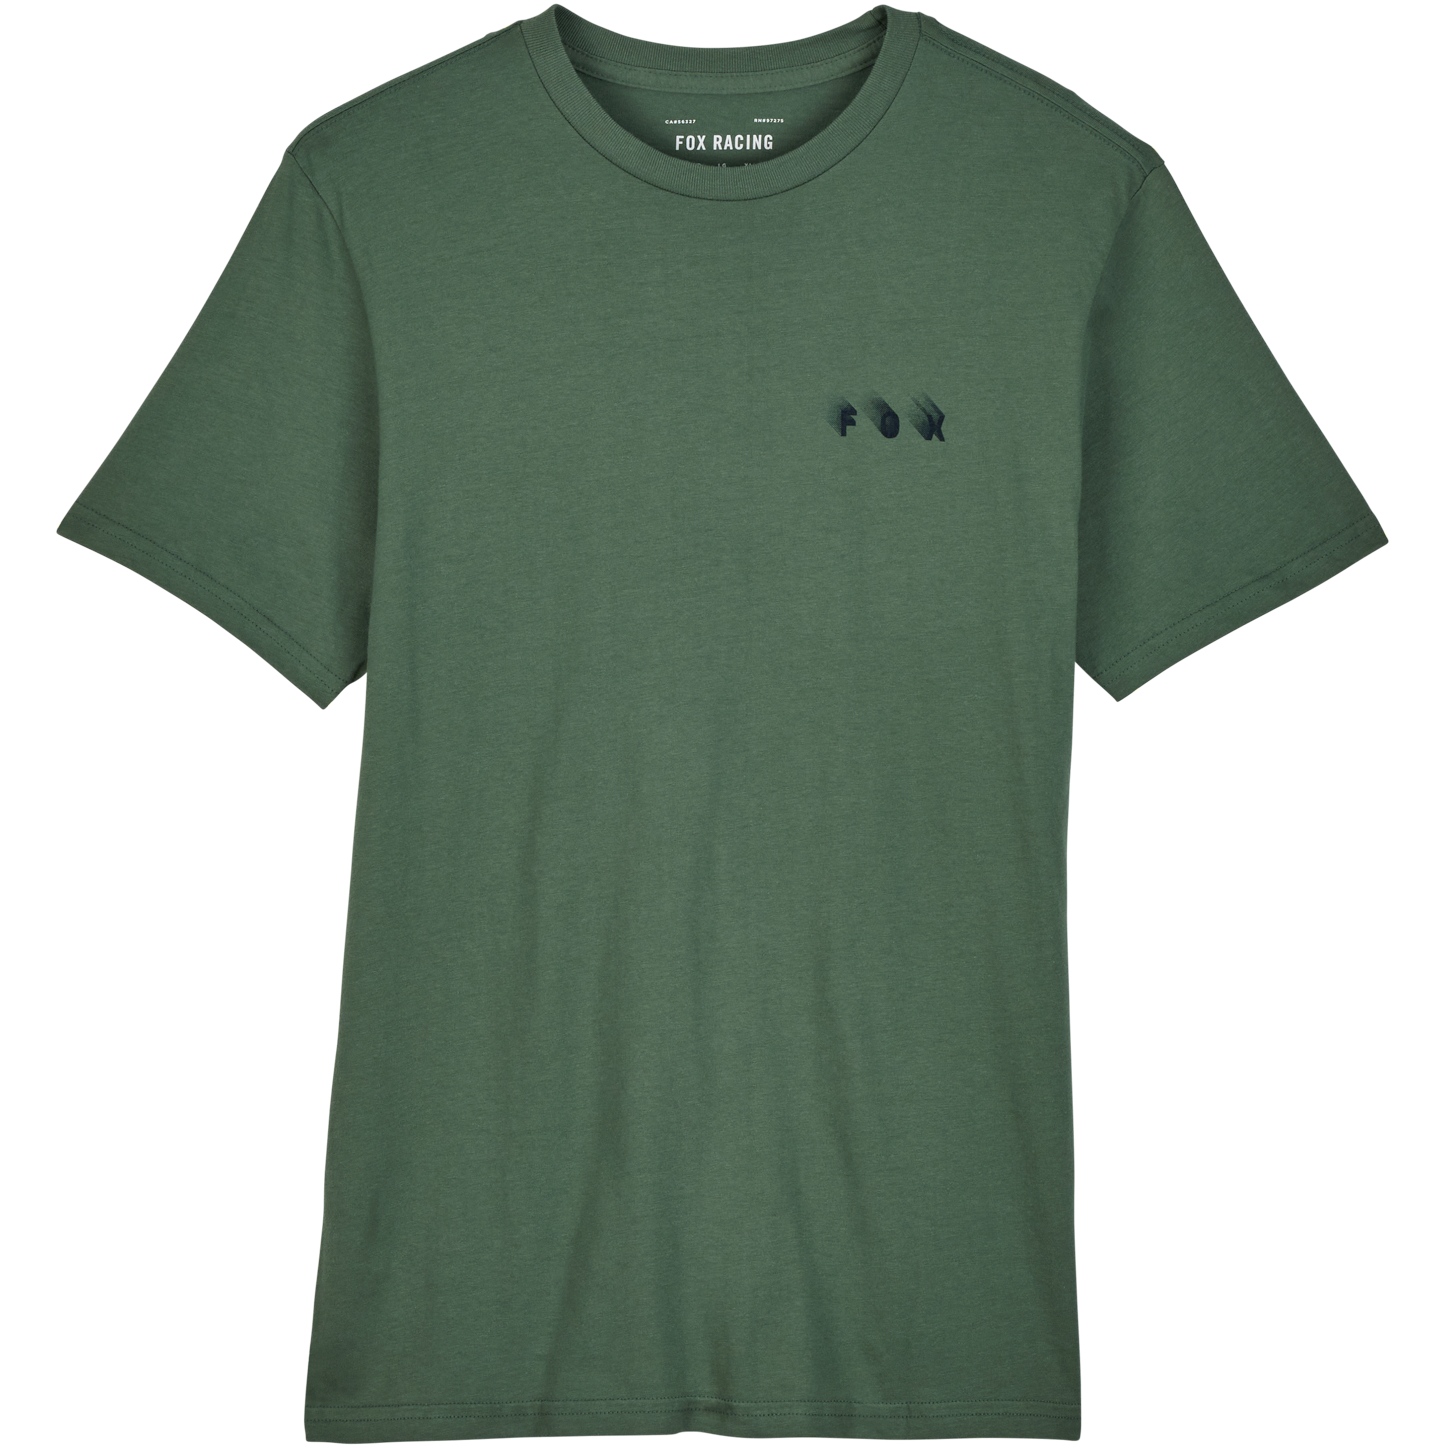 Produktbild von FOX Wayfaring Premium Kurzarmshirt Herren - hunter green